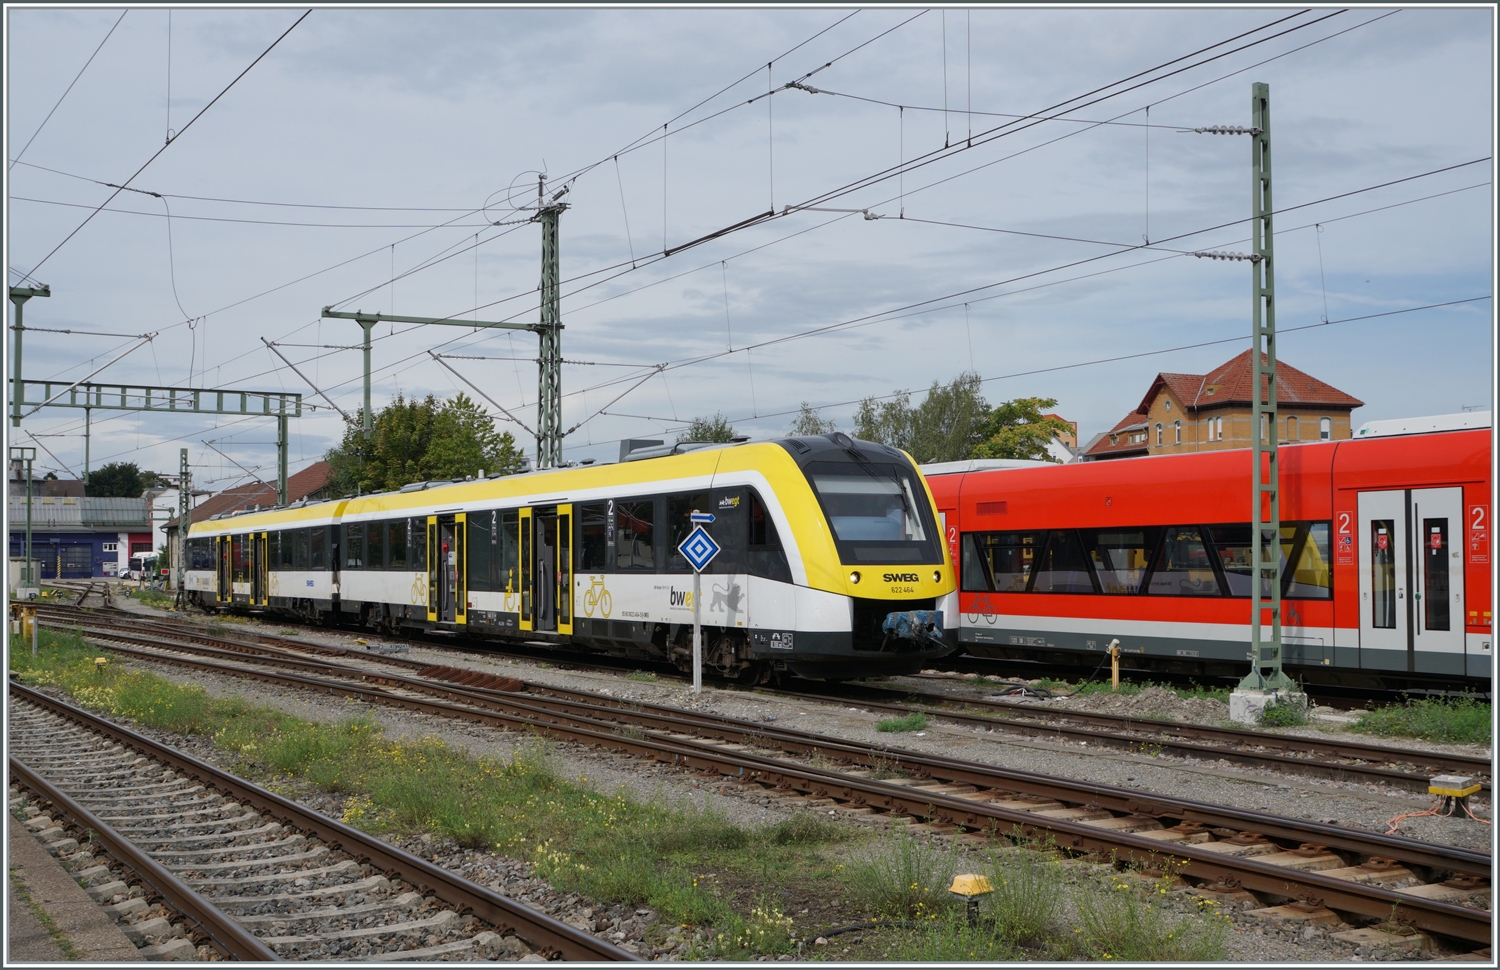 Vor kurzem wurde der Bahnhof von Friedrichshafen elektivziert. Somit muss man beim Fotografieren nun nicht nur auf die Fahrleitungsmasten achten, sondern auch auf die Signaltafeln, wobei letzteres beim Fotografiern des LINT 622 nicht ganz geklappt hat.

14. Sept. 2022